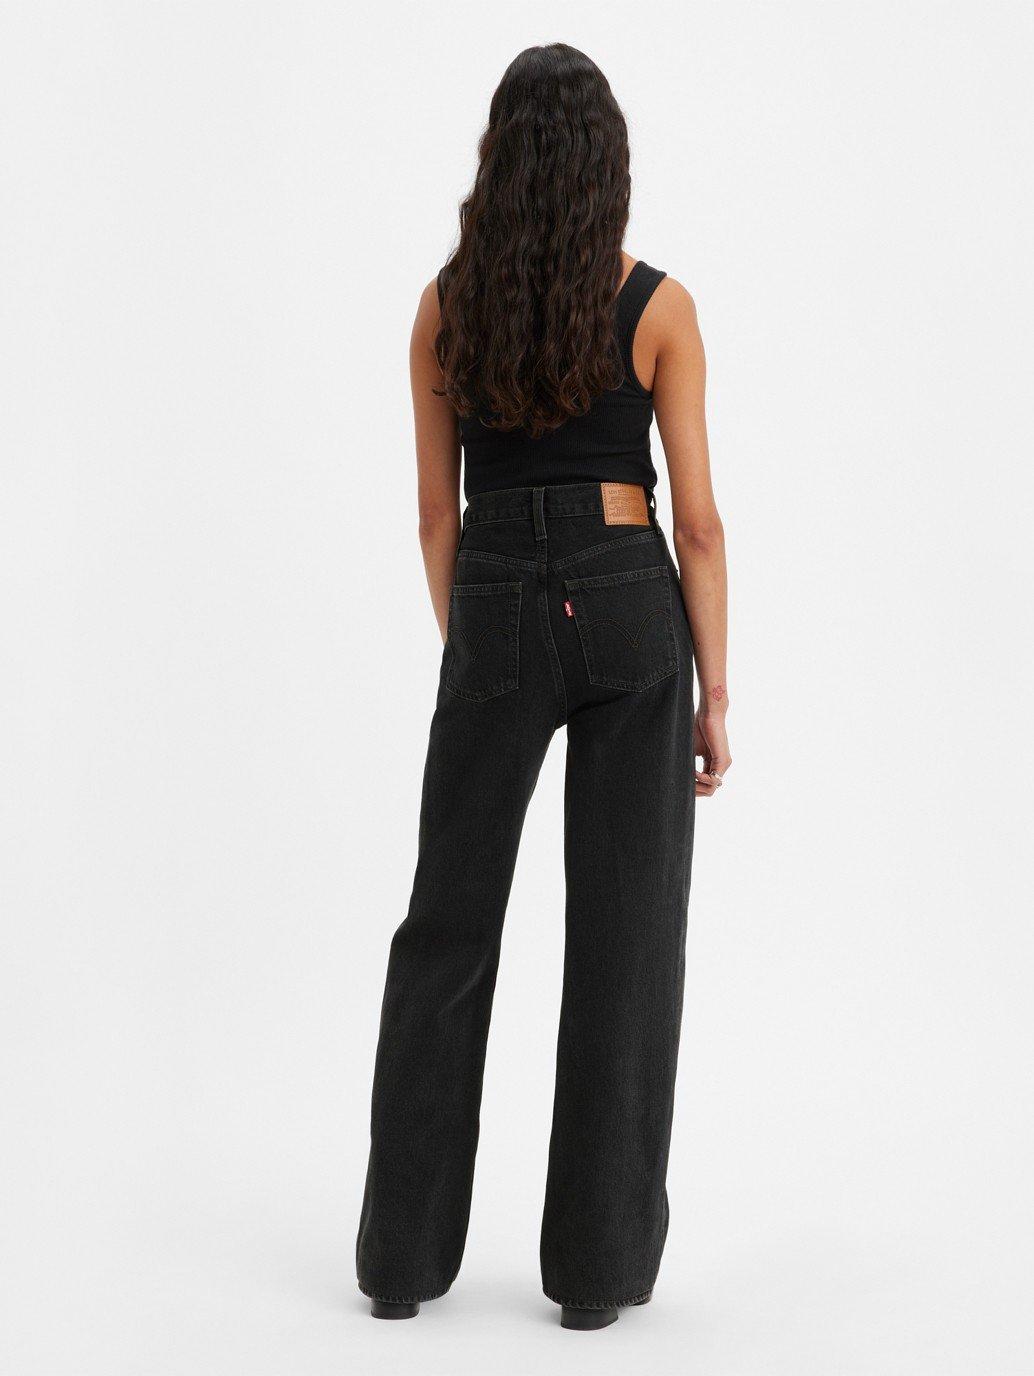 Buy Levi's® Women's Ribcage Wide-Leg Jeans| Levi’s® Official Online ...